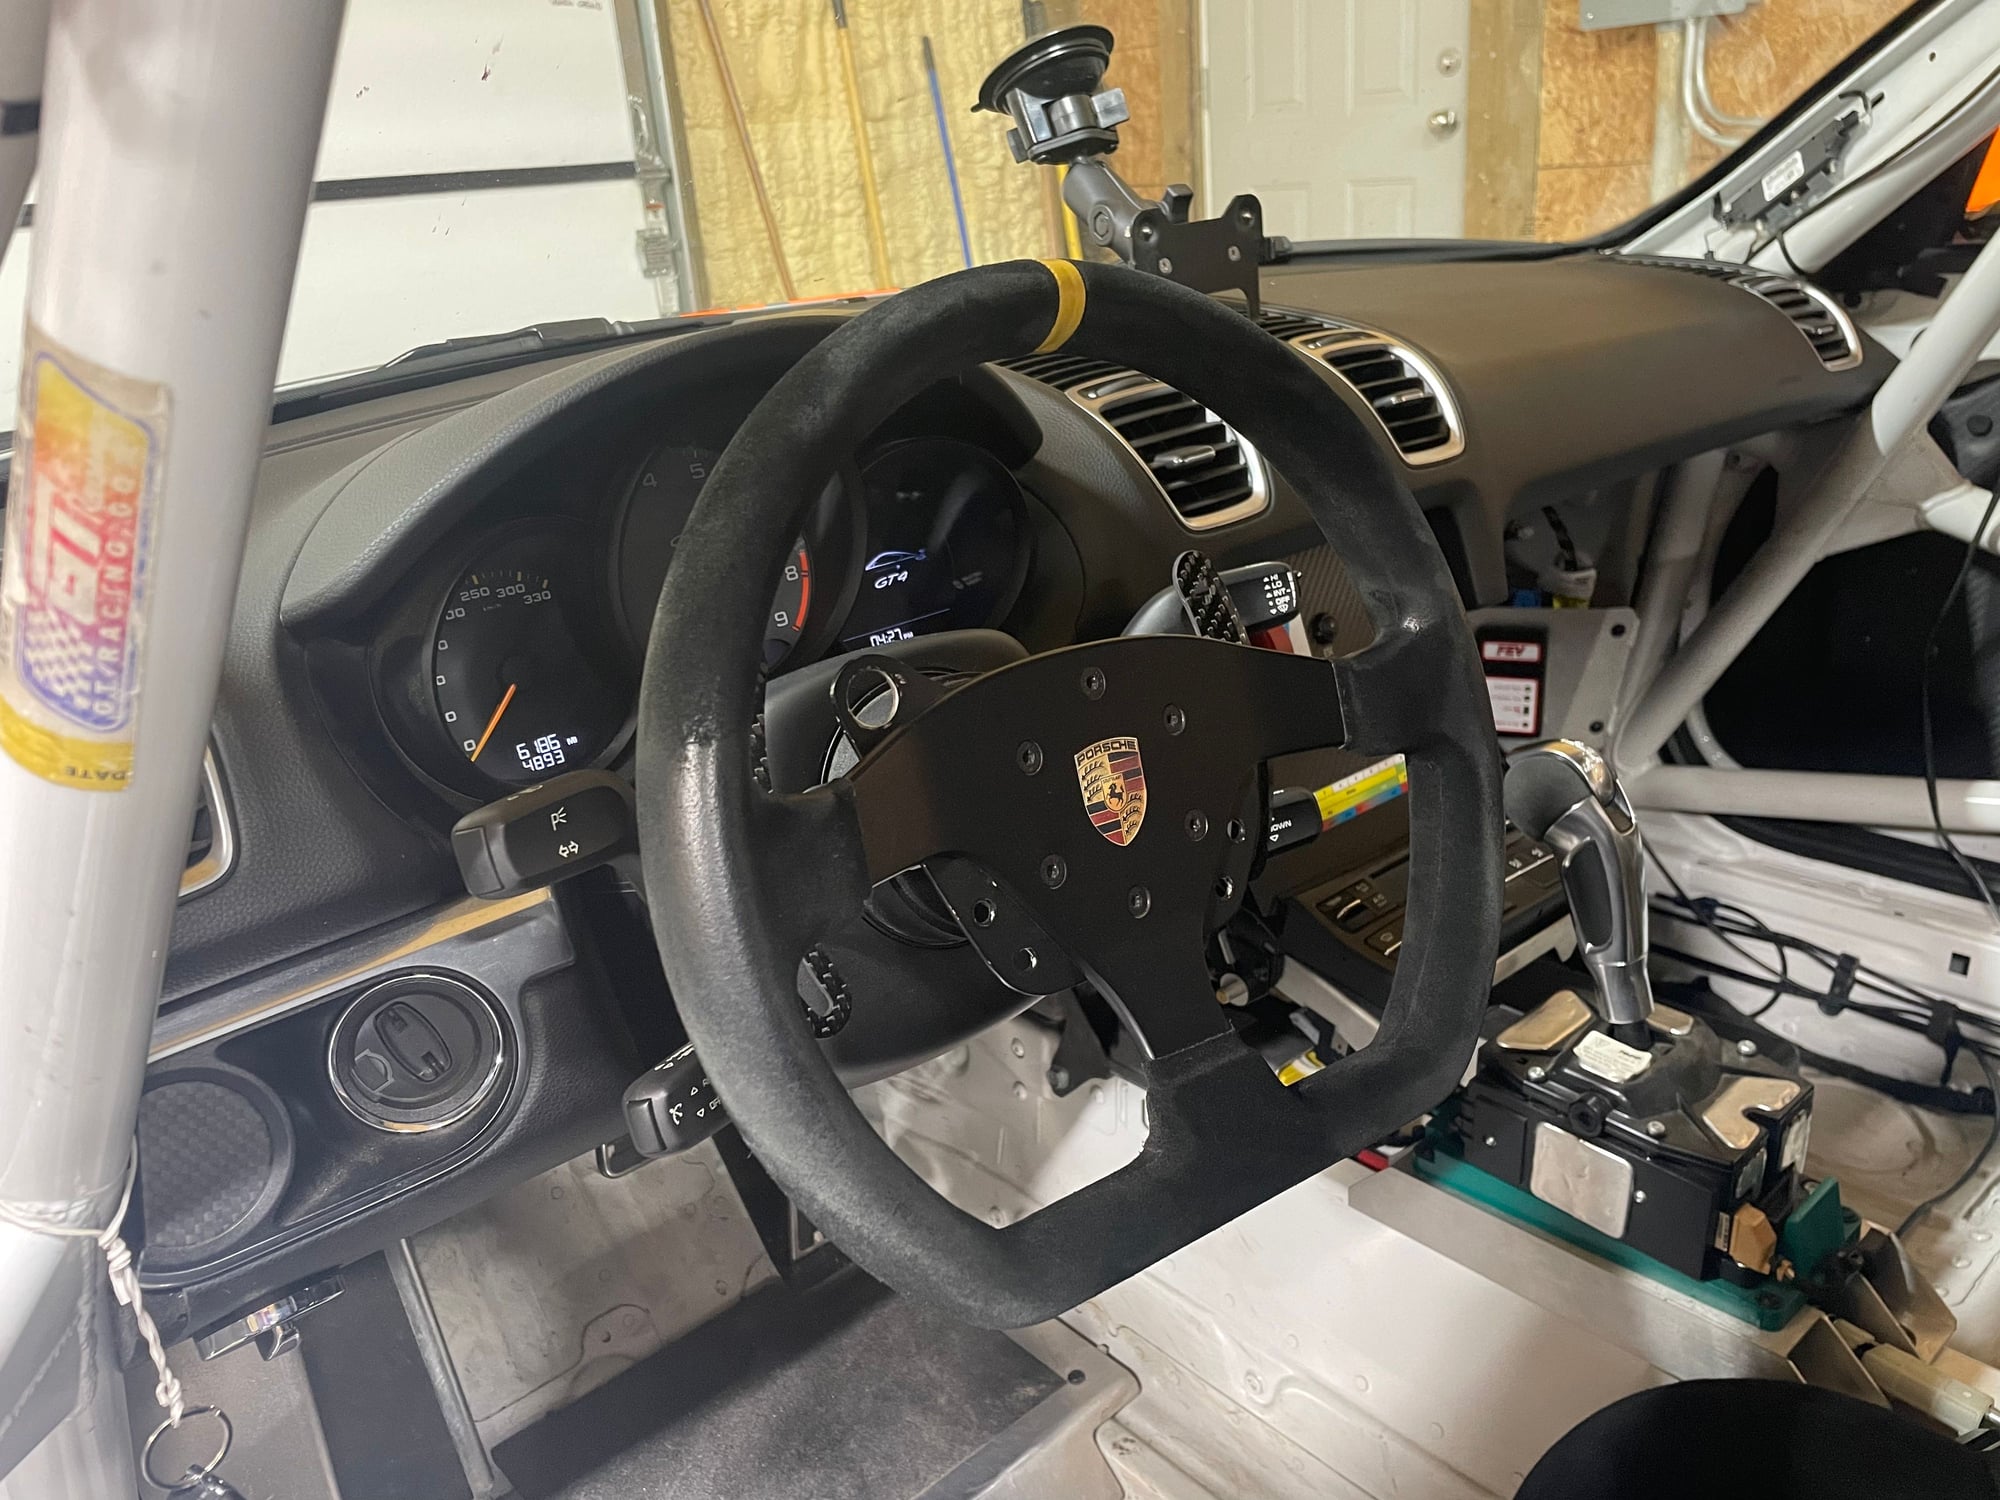 2016 Porsche Cayman GT4 - 2016 porsche GT4 Clubsport many upgrades JRZ suspension - Used - VIN XXXXXXXXXXXXXXXXX - 6,186 Miles - 6 cyl - 2WD - Automatic - Coupe - White - Little Rock, AR 72223, United States